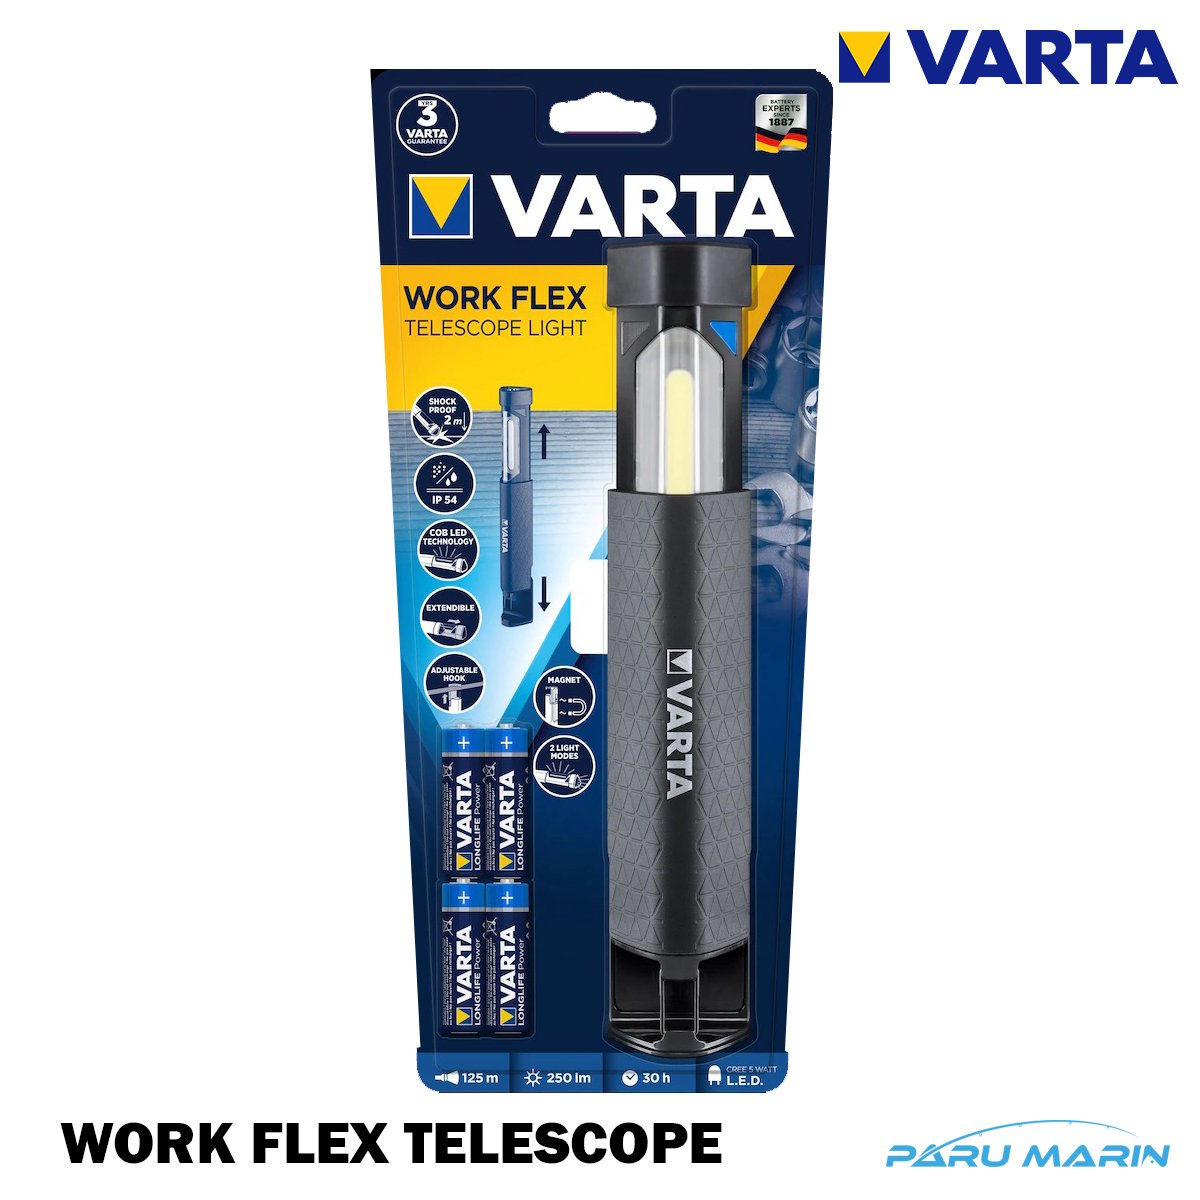 VARTA WORK FLEX TELESCOPE Led Fener